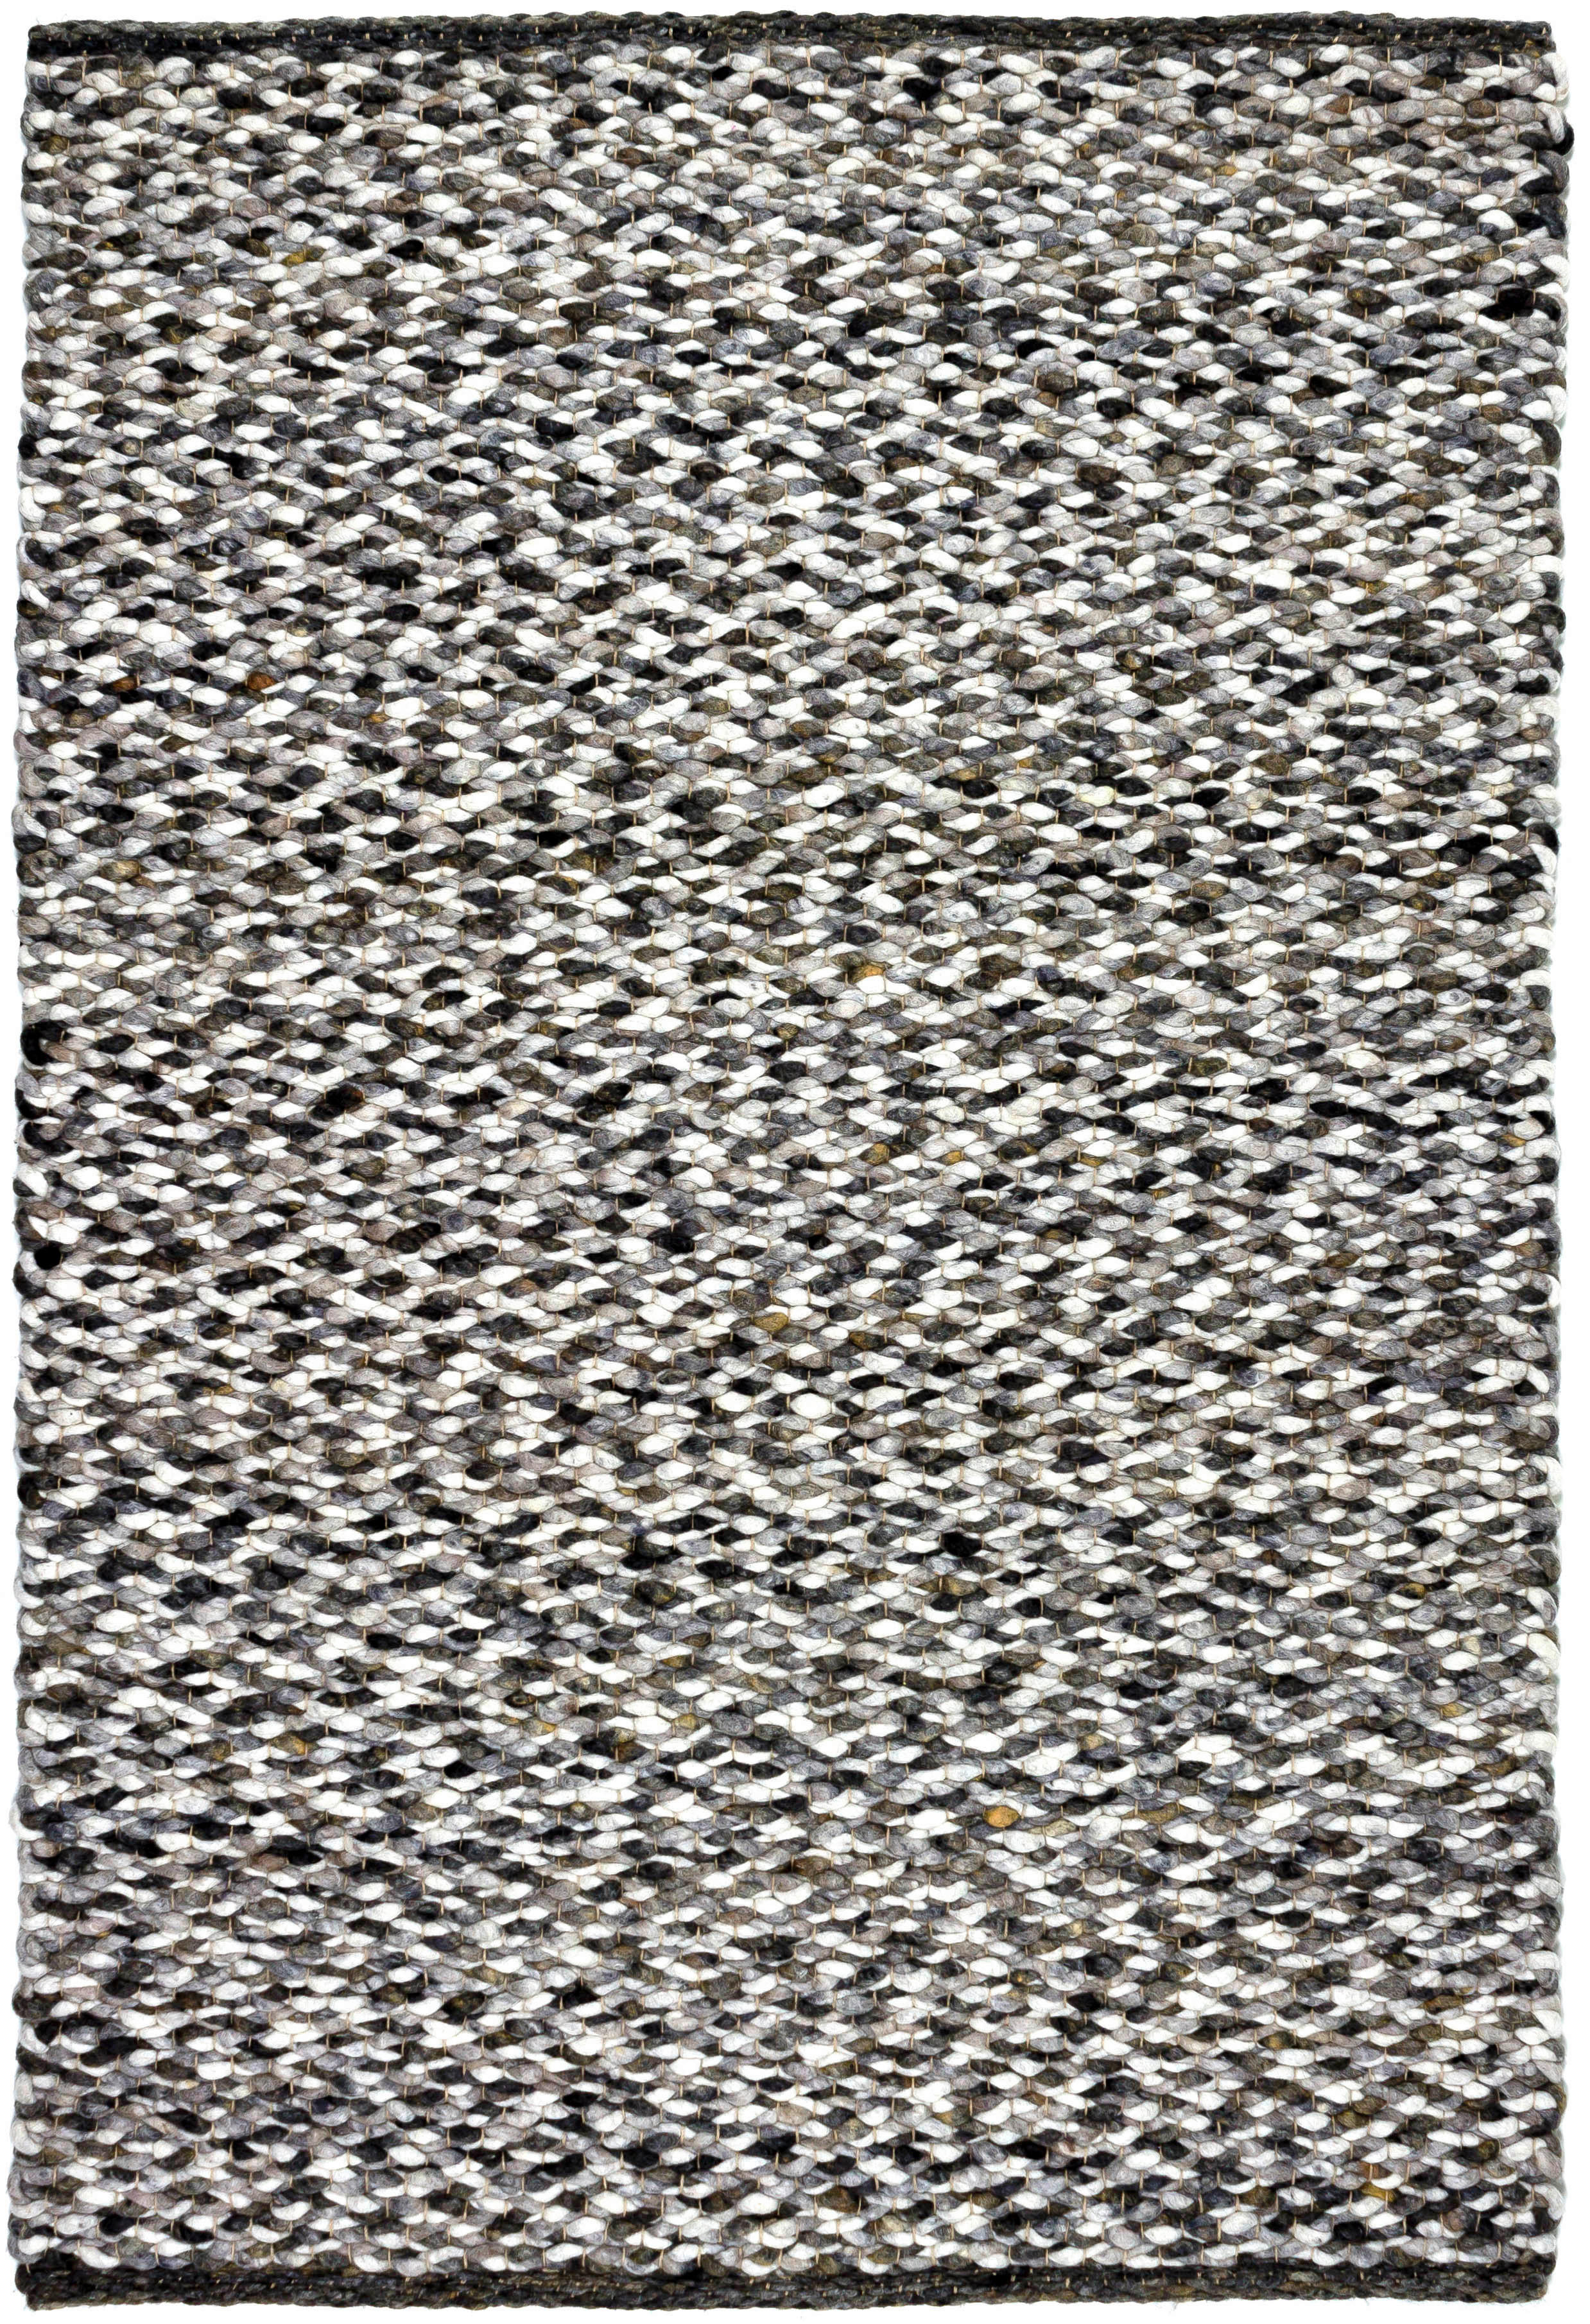 HANDWEBTEPPICH 130/200 cm Centa Canberra  - Schwarz/Weiß, KONVENTIONELL, Textil (130/200cm) - Linea Natura